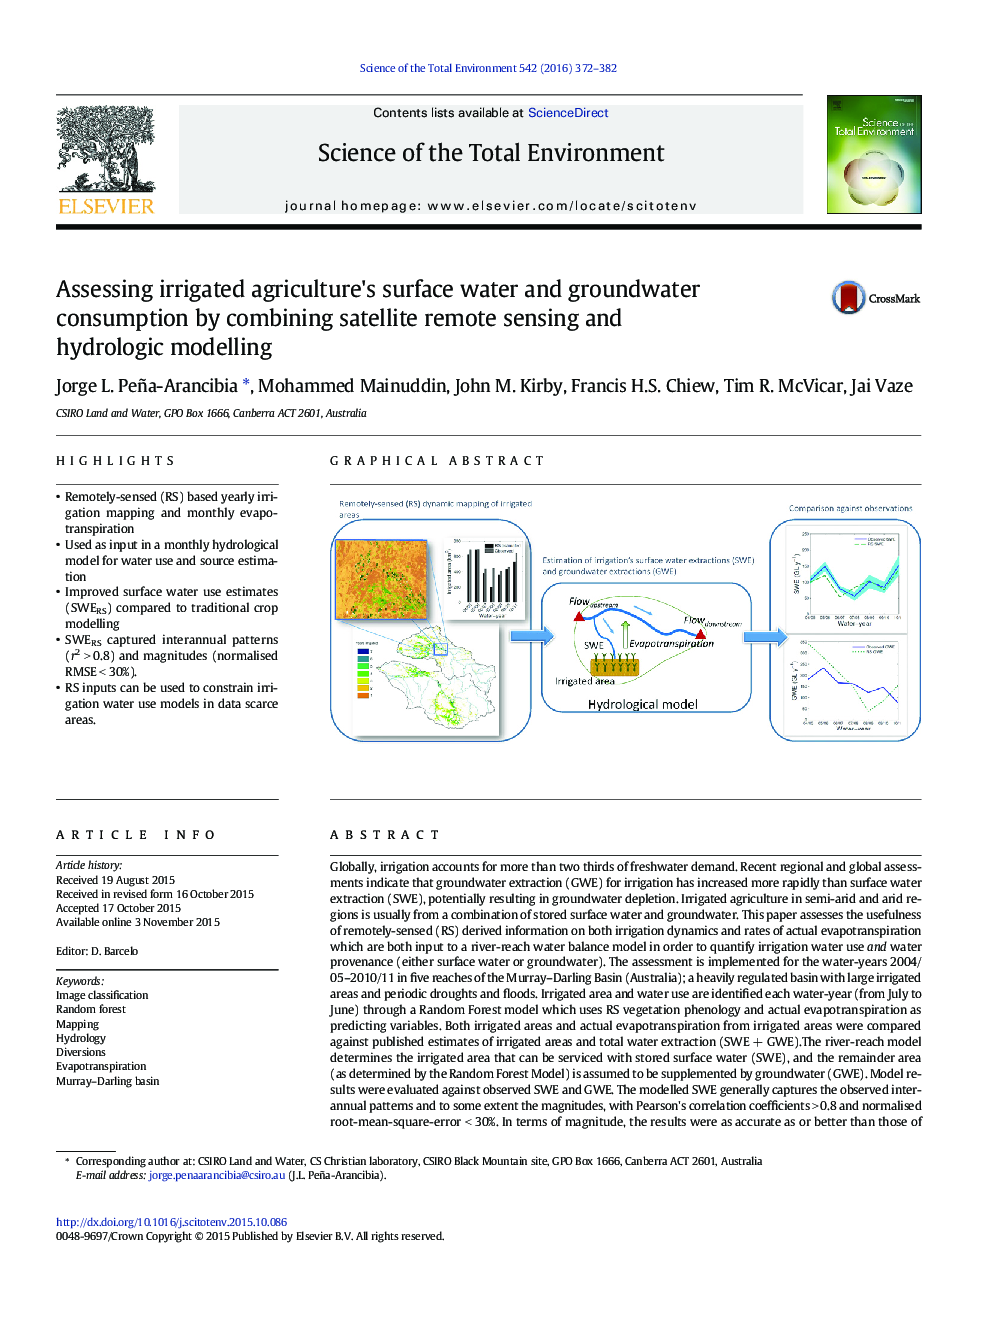 ارزیابی آبهای سطحی آب کشاورزی و آبهای زیرزمینی آب شور توسط ترکیب سنجش از راه دور ماهواره ای و مدل سازی هیدرولوژیکی 